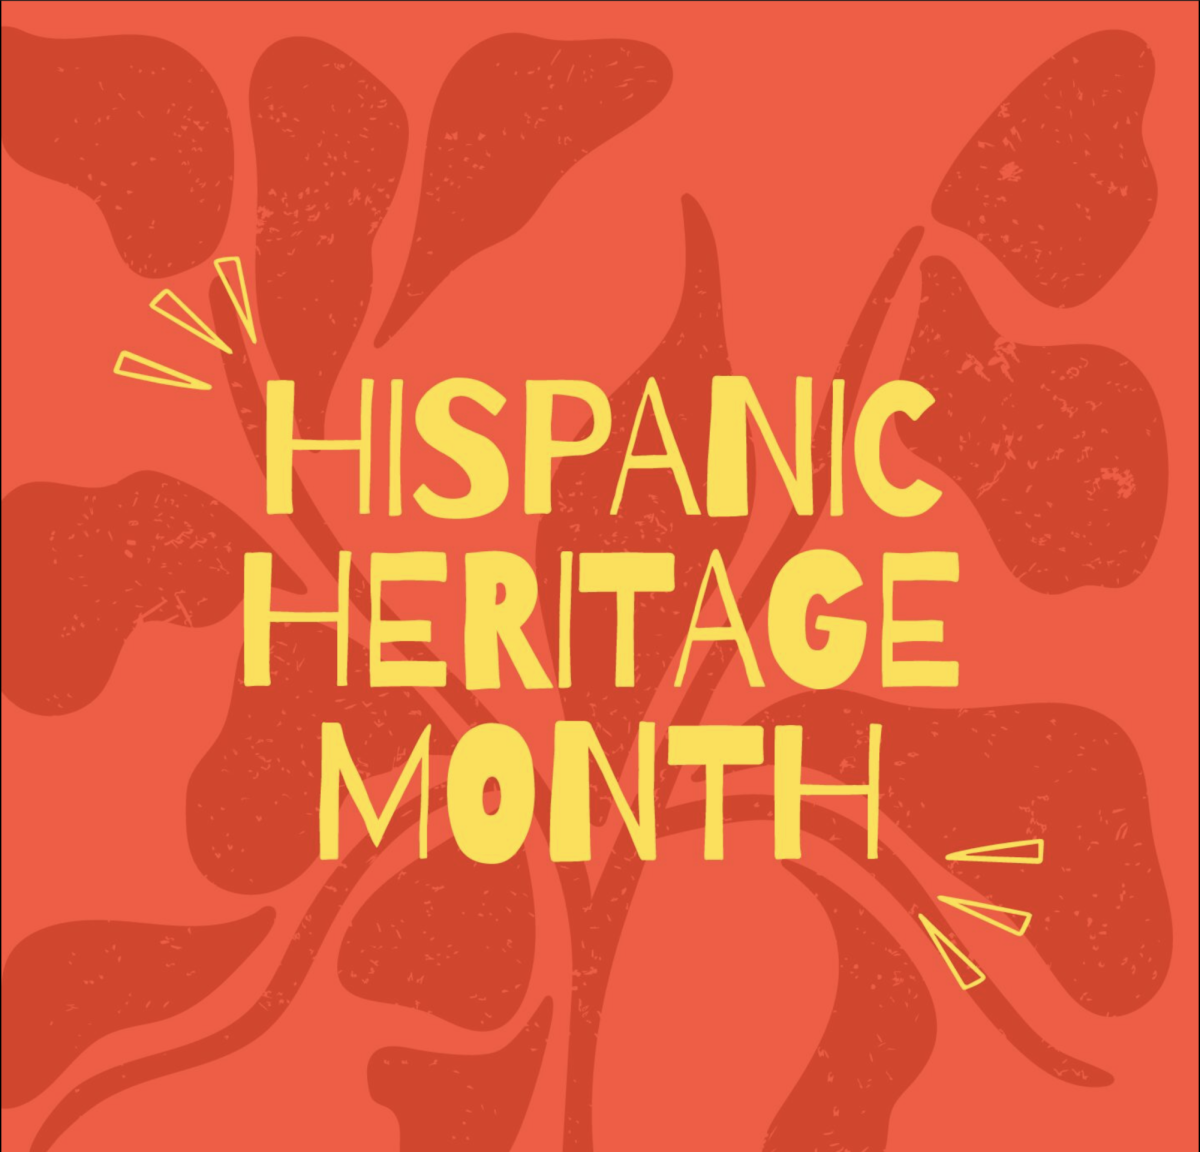 Lista discográfica del mes: Una celebración latina-hispana